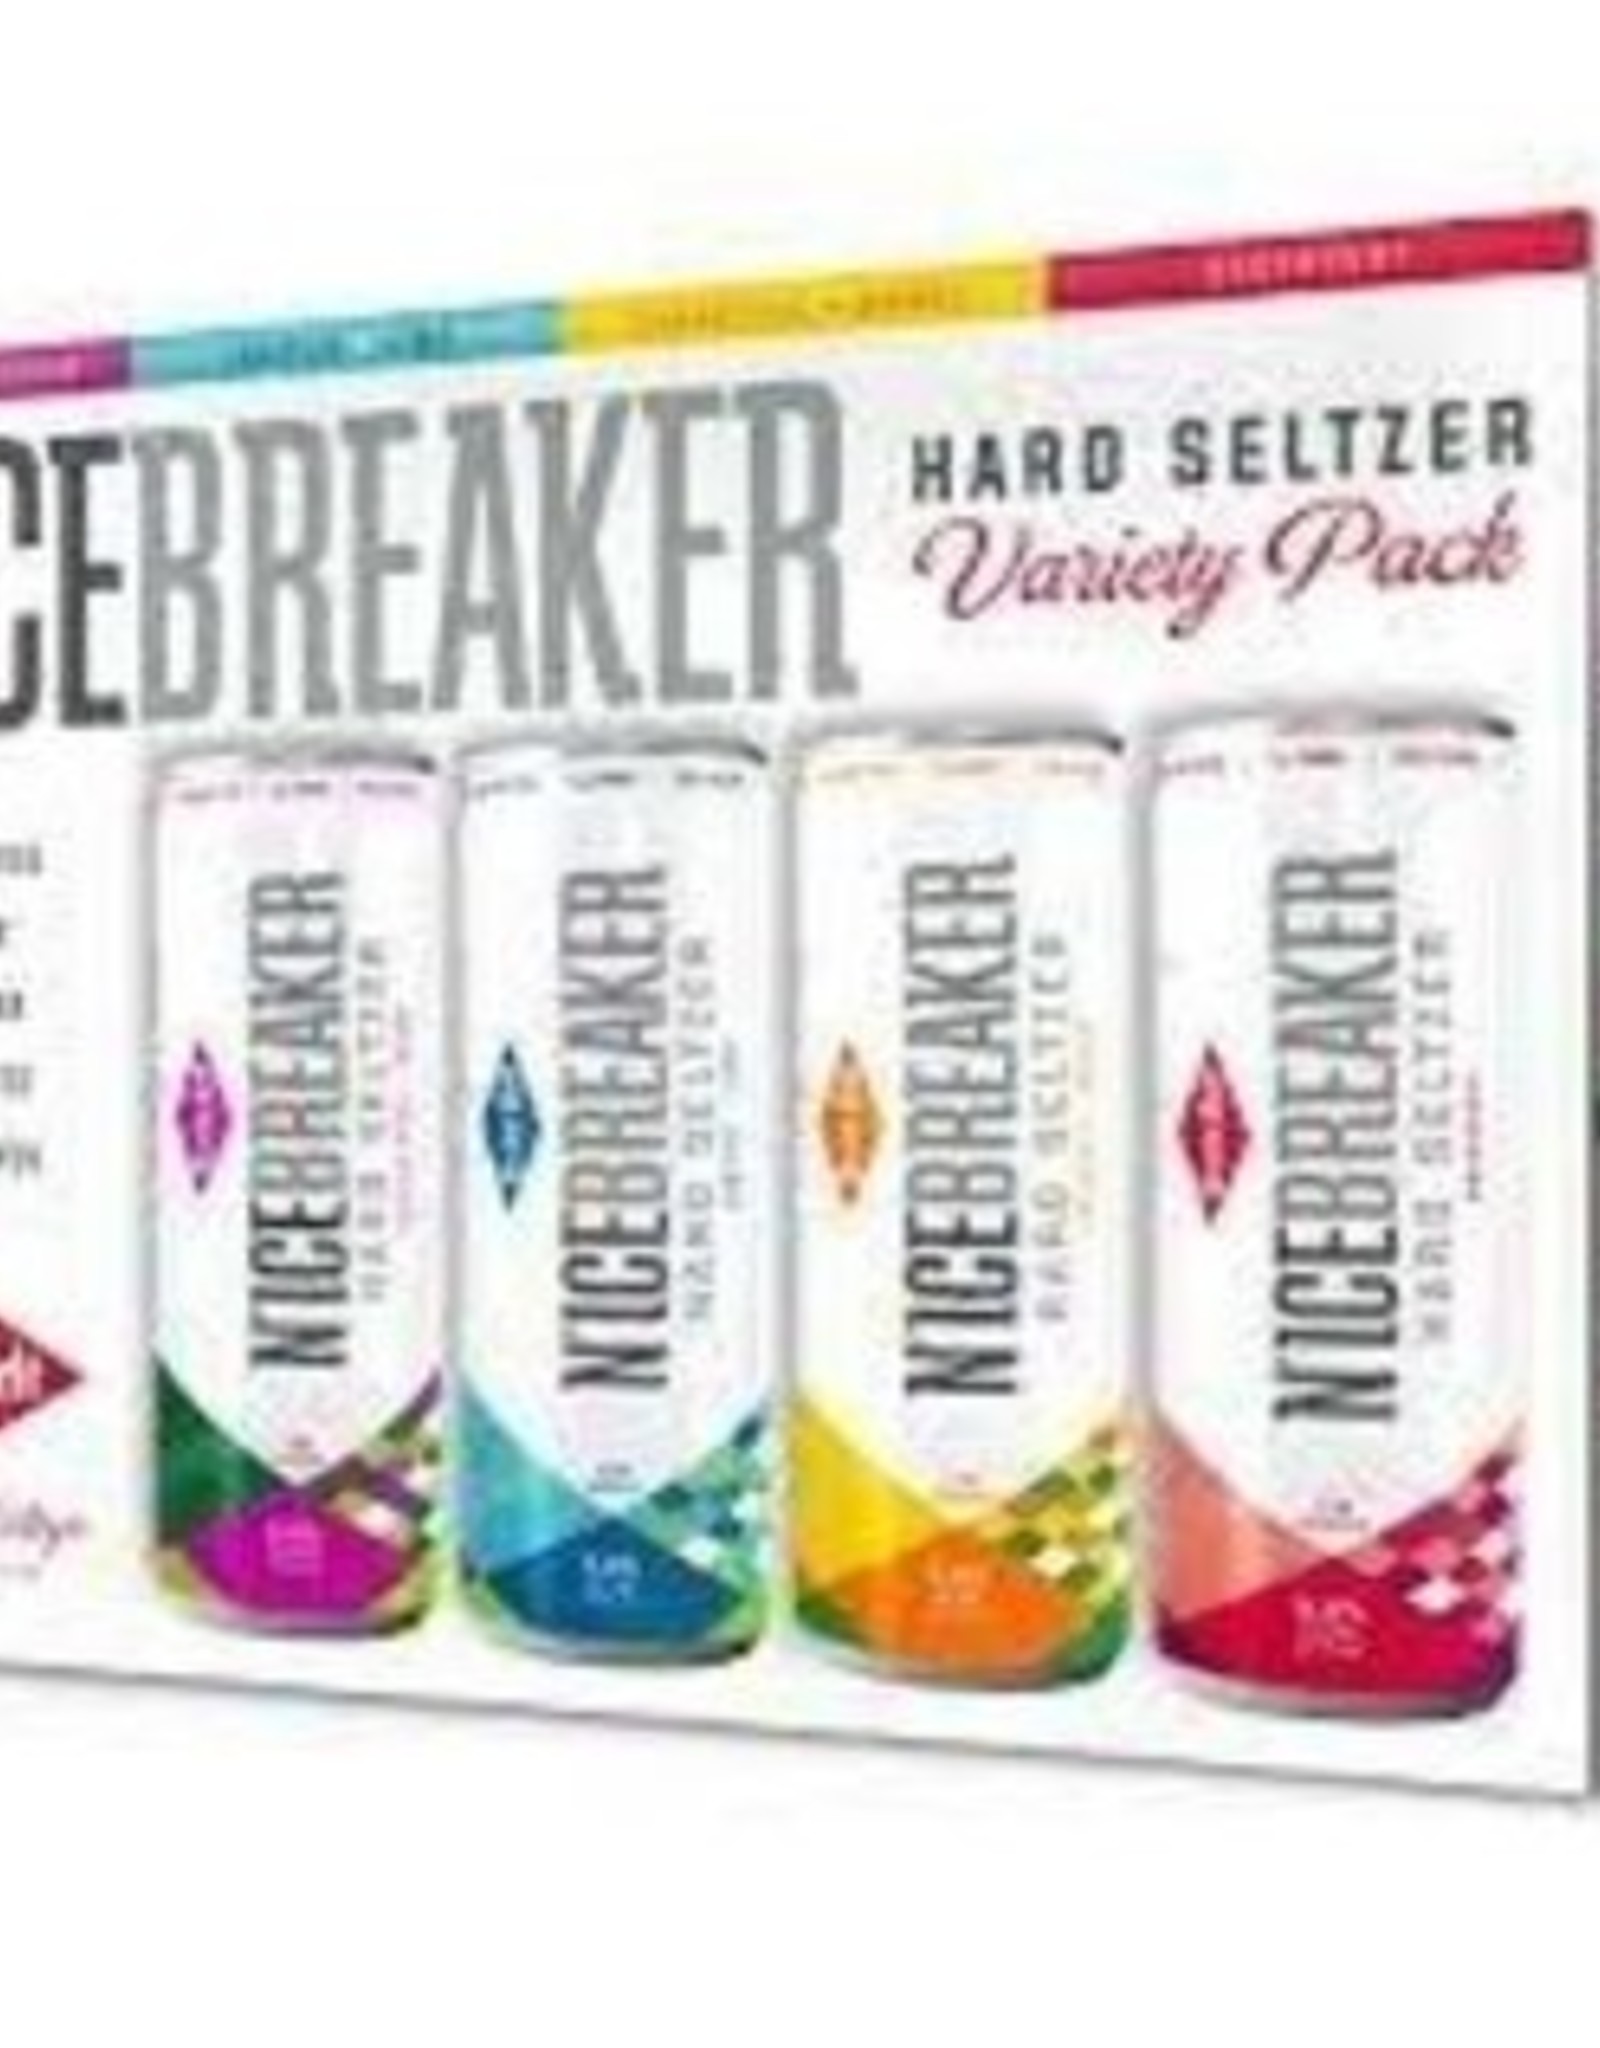 N'Icebreaker Variety Pack 12x12 oz slim cans